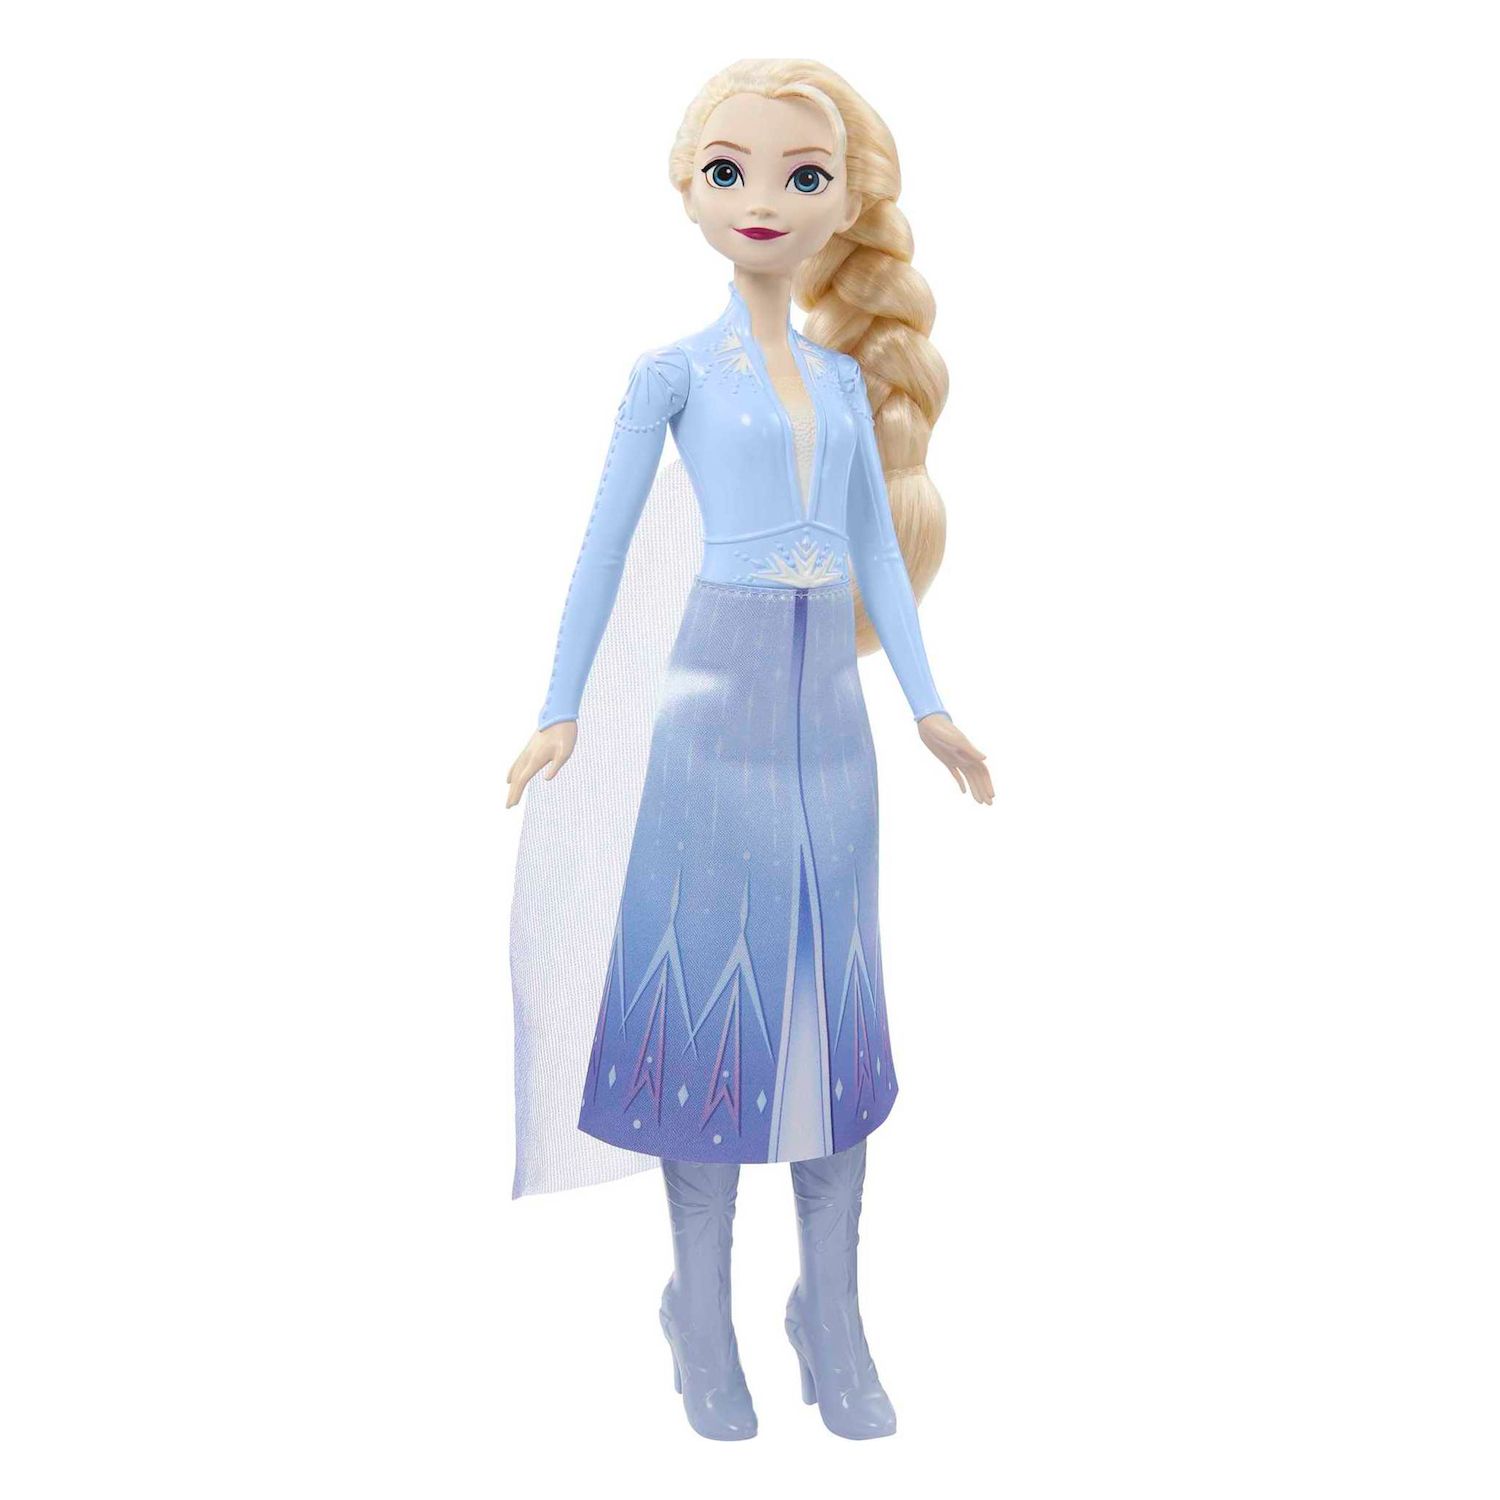 Модная кукла Эльза из мультфильма «Холодное сердце 2» от Mattel Mattel mattel скрабл дорожный